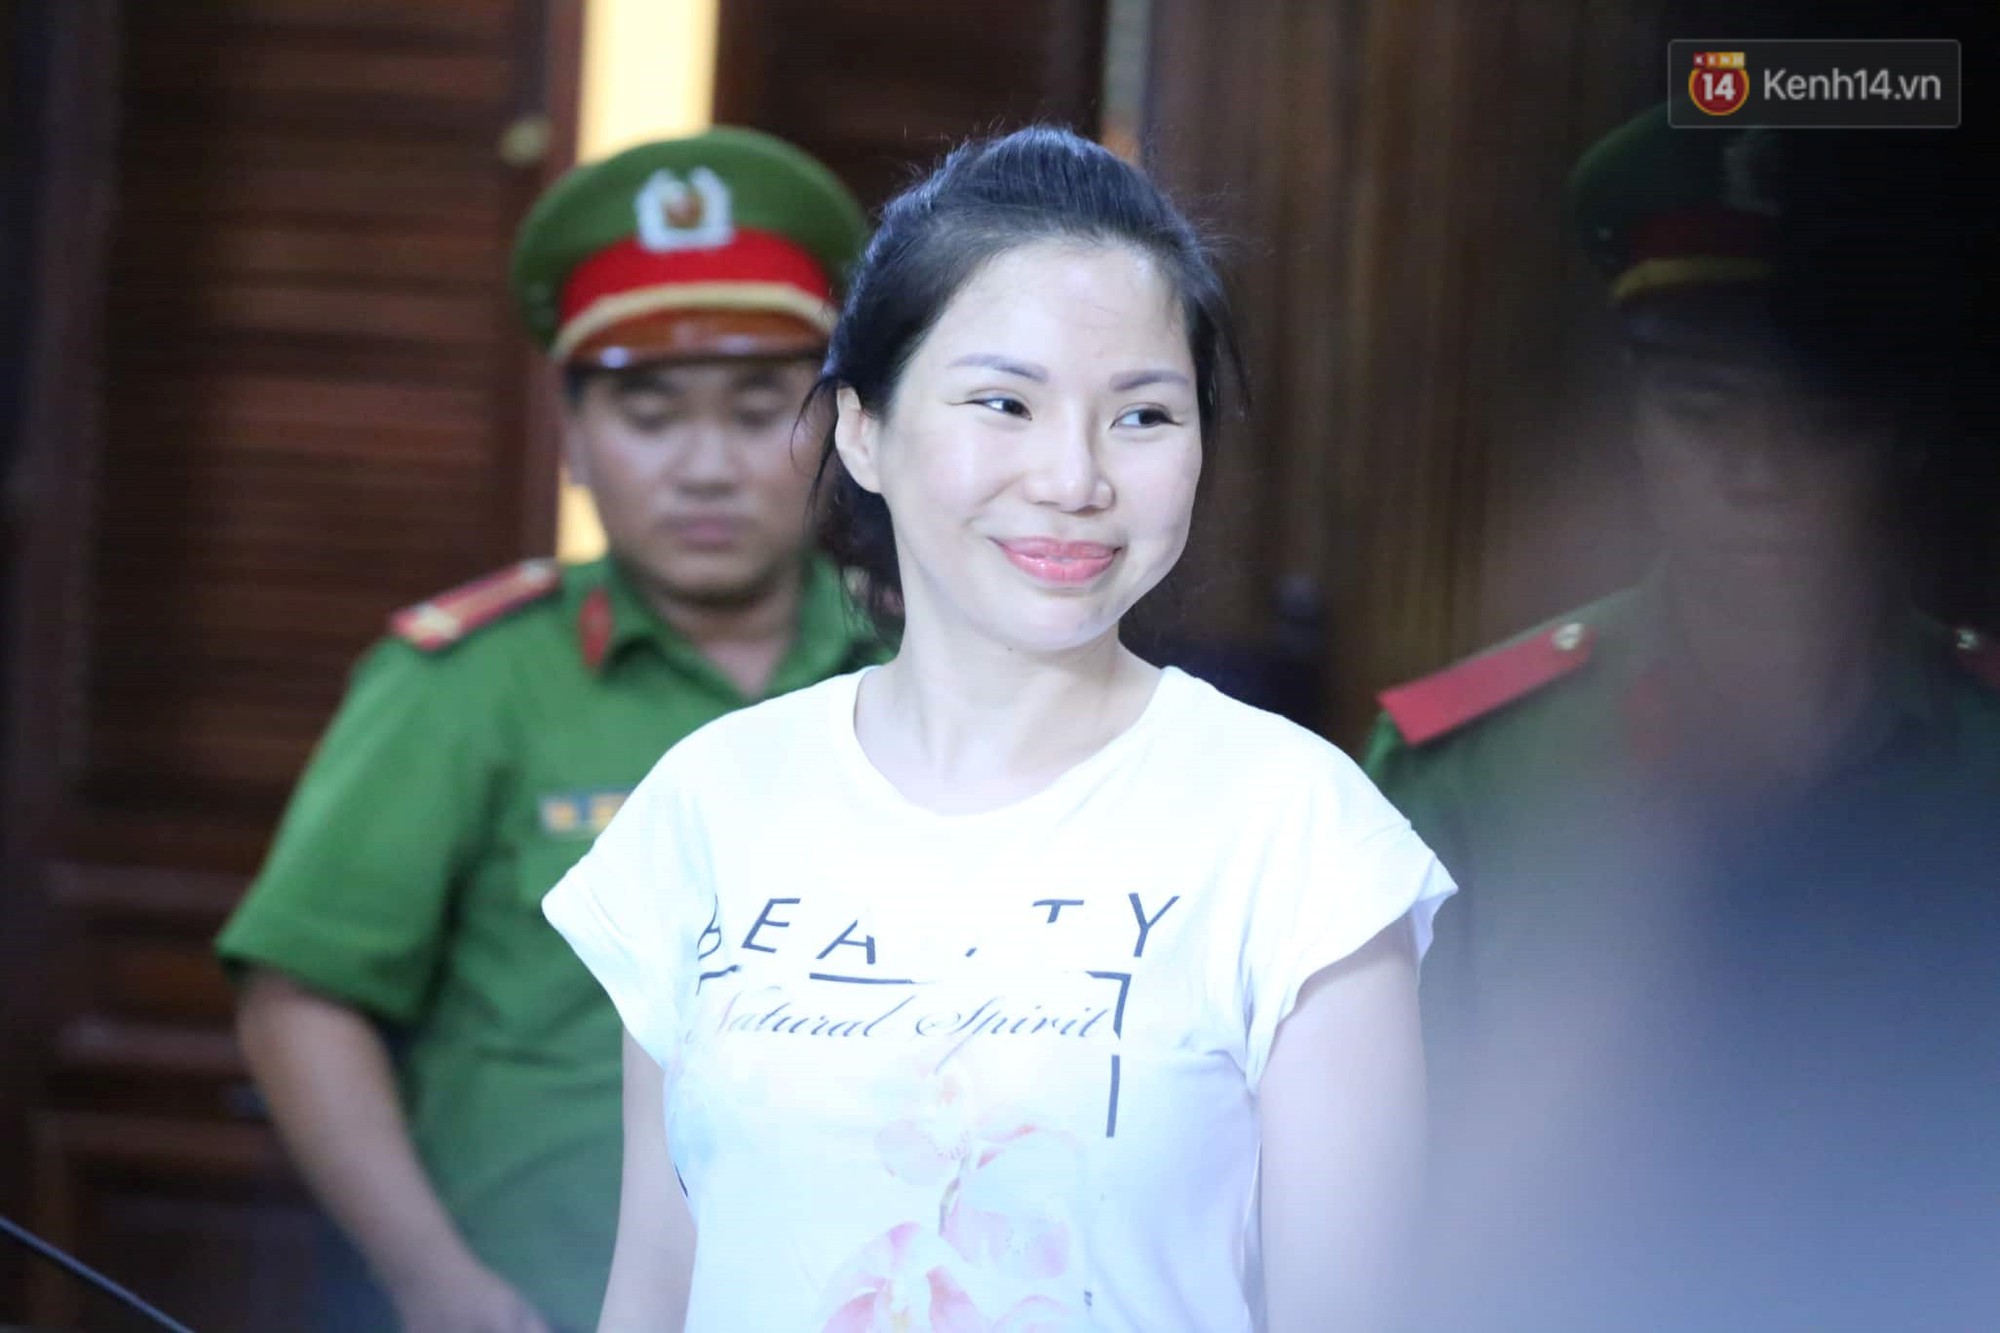 Vợ cũ lĩnh án 18 tháng tù, bác sĩ Chiêm Quốc Thái tuyên bố sẽ kháng cáo-2